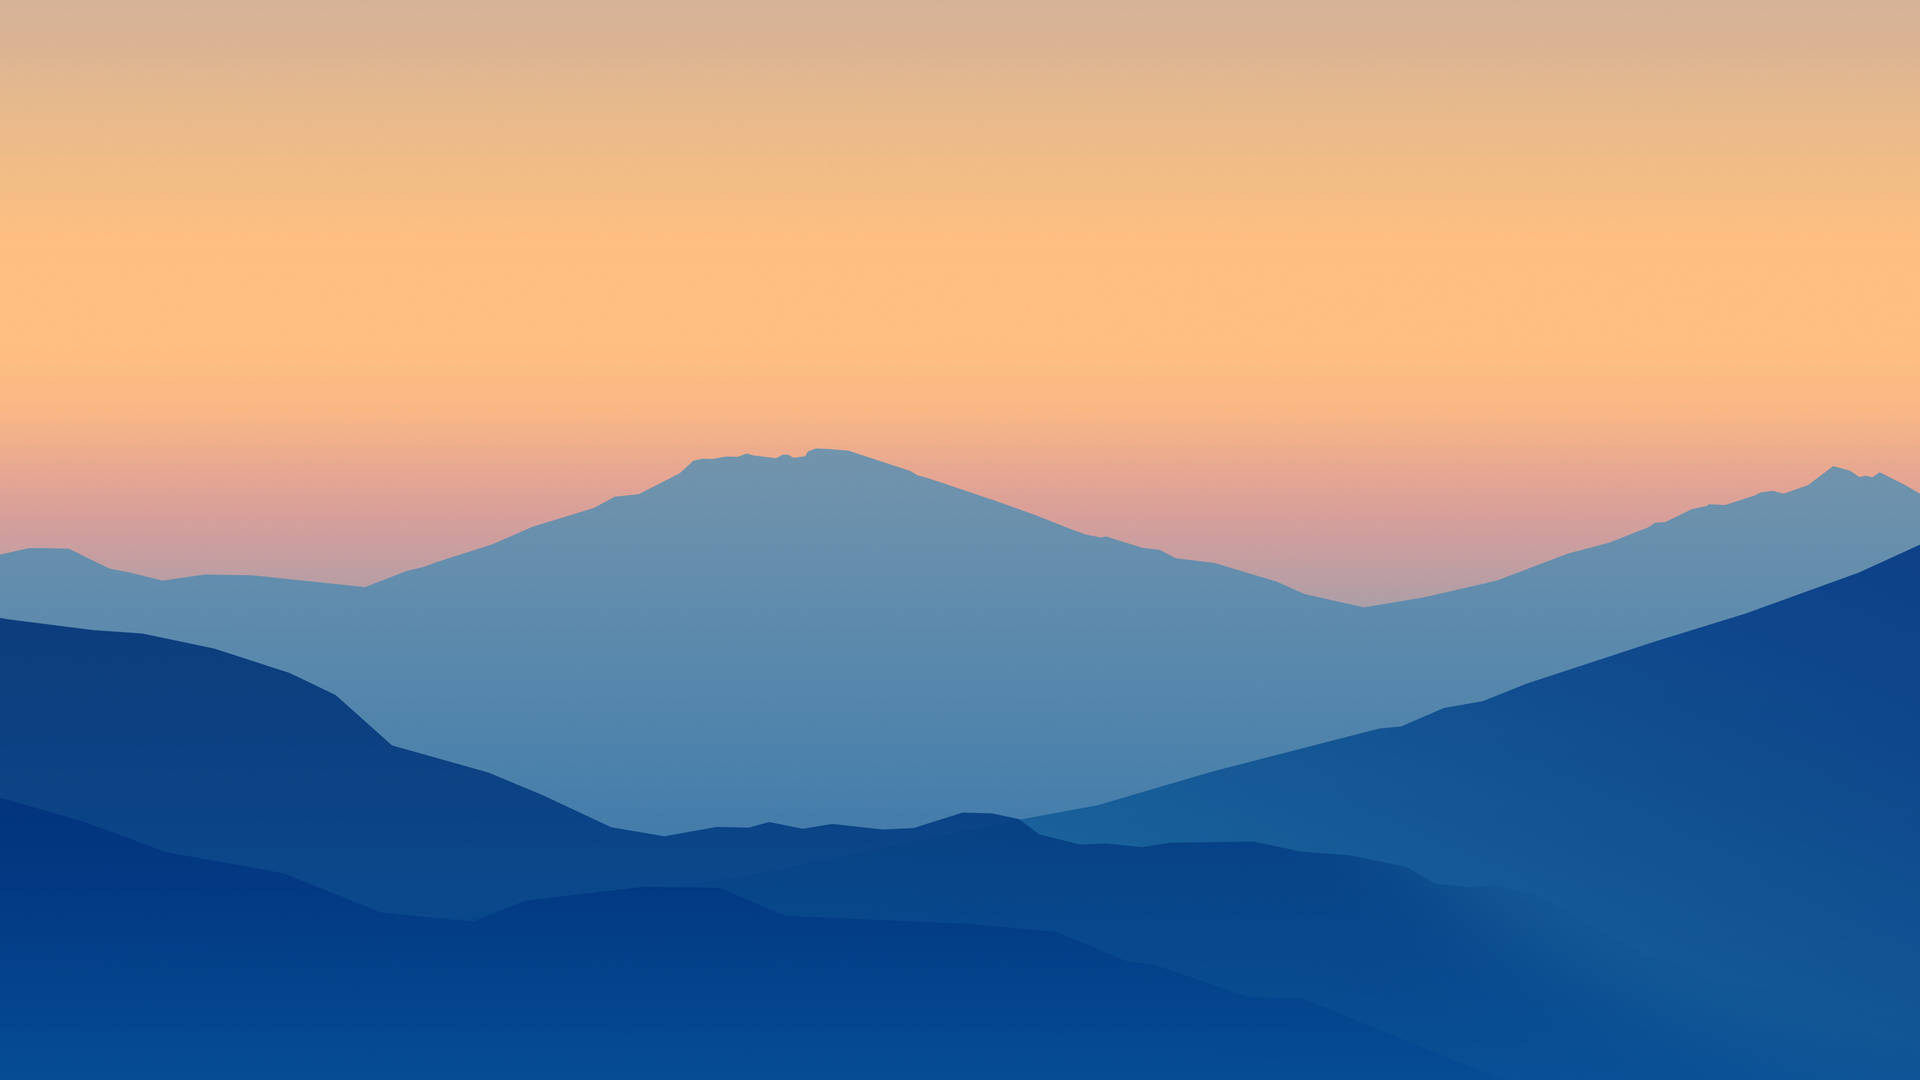 Minimalist Vector Art Mountain Background